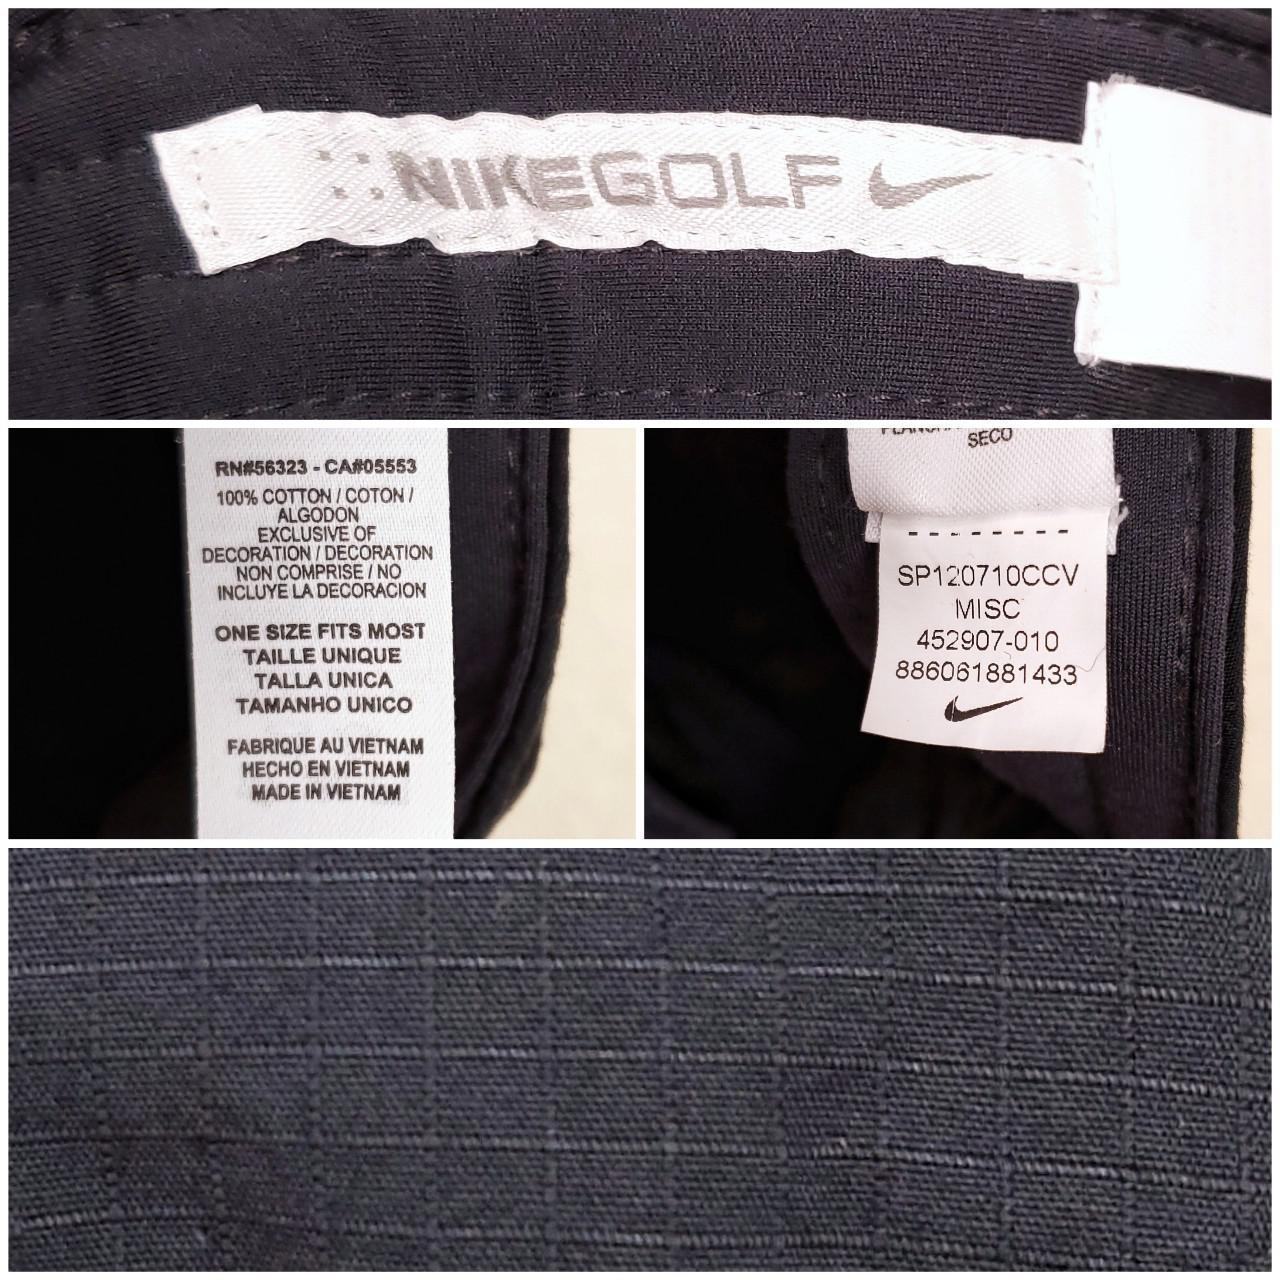 Product Image 4 - Nike black newsboy cap

Nike Golf